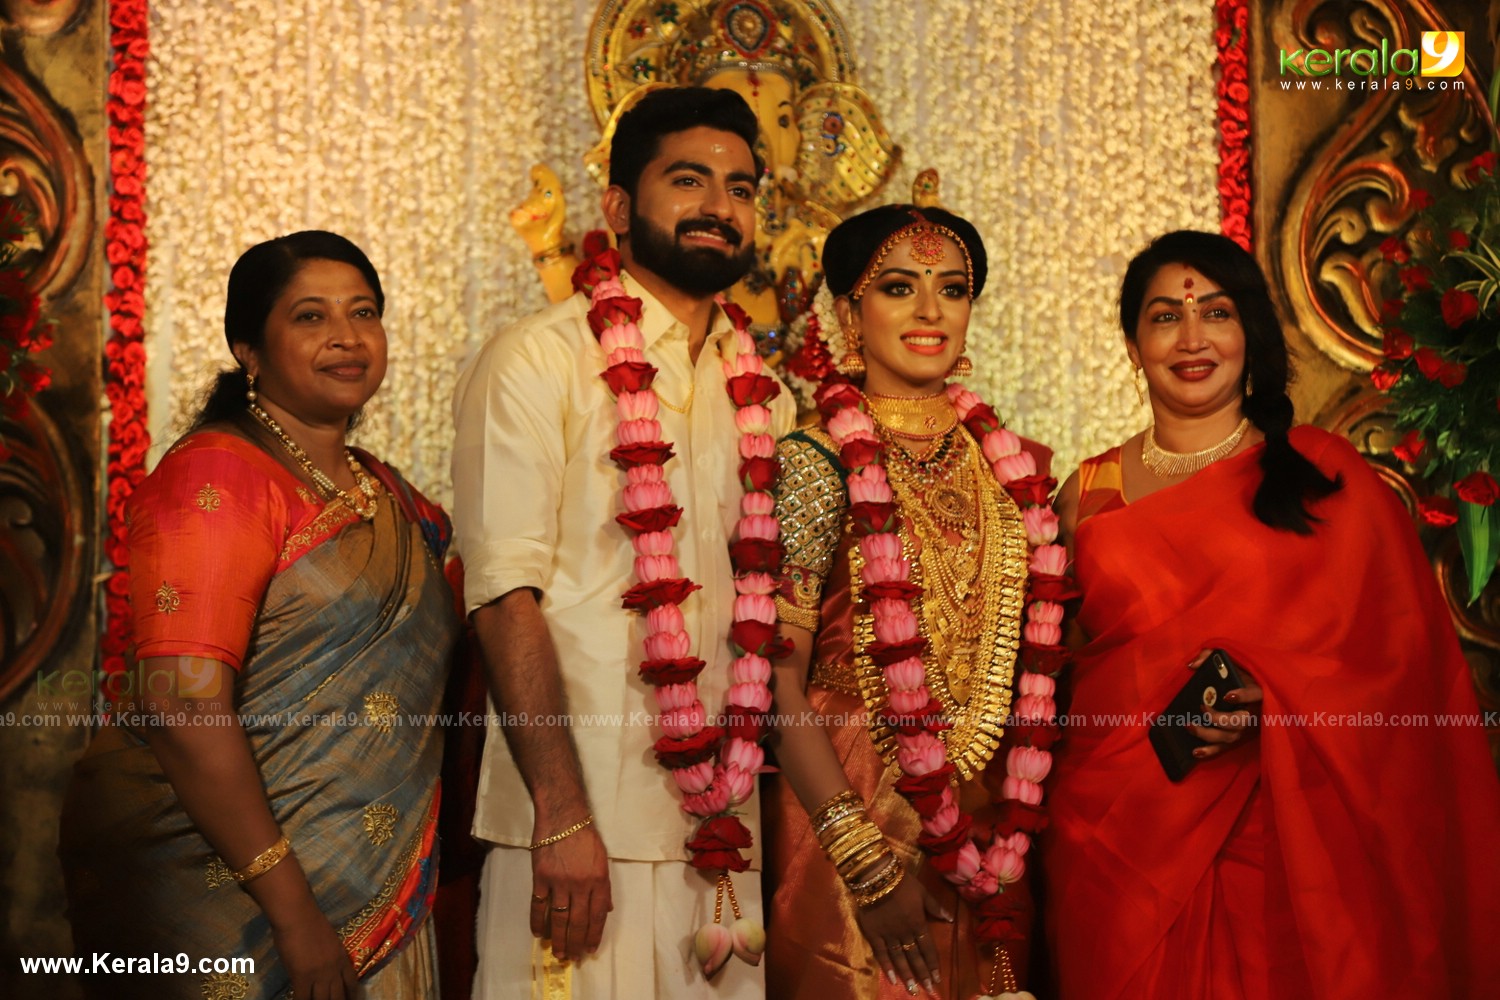 Actress Mahalakshmi Wedding Photos 070 - Kerala9.com